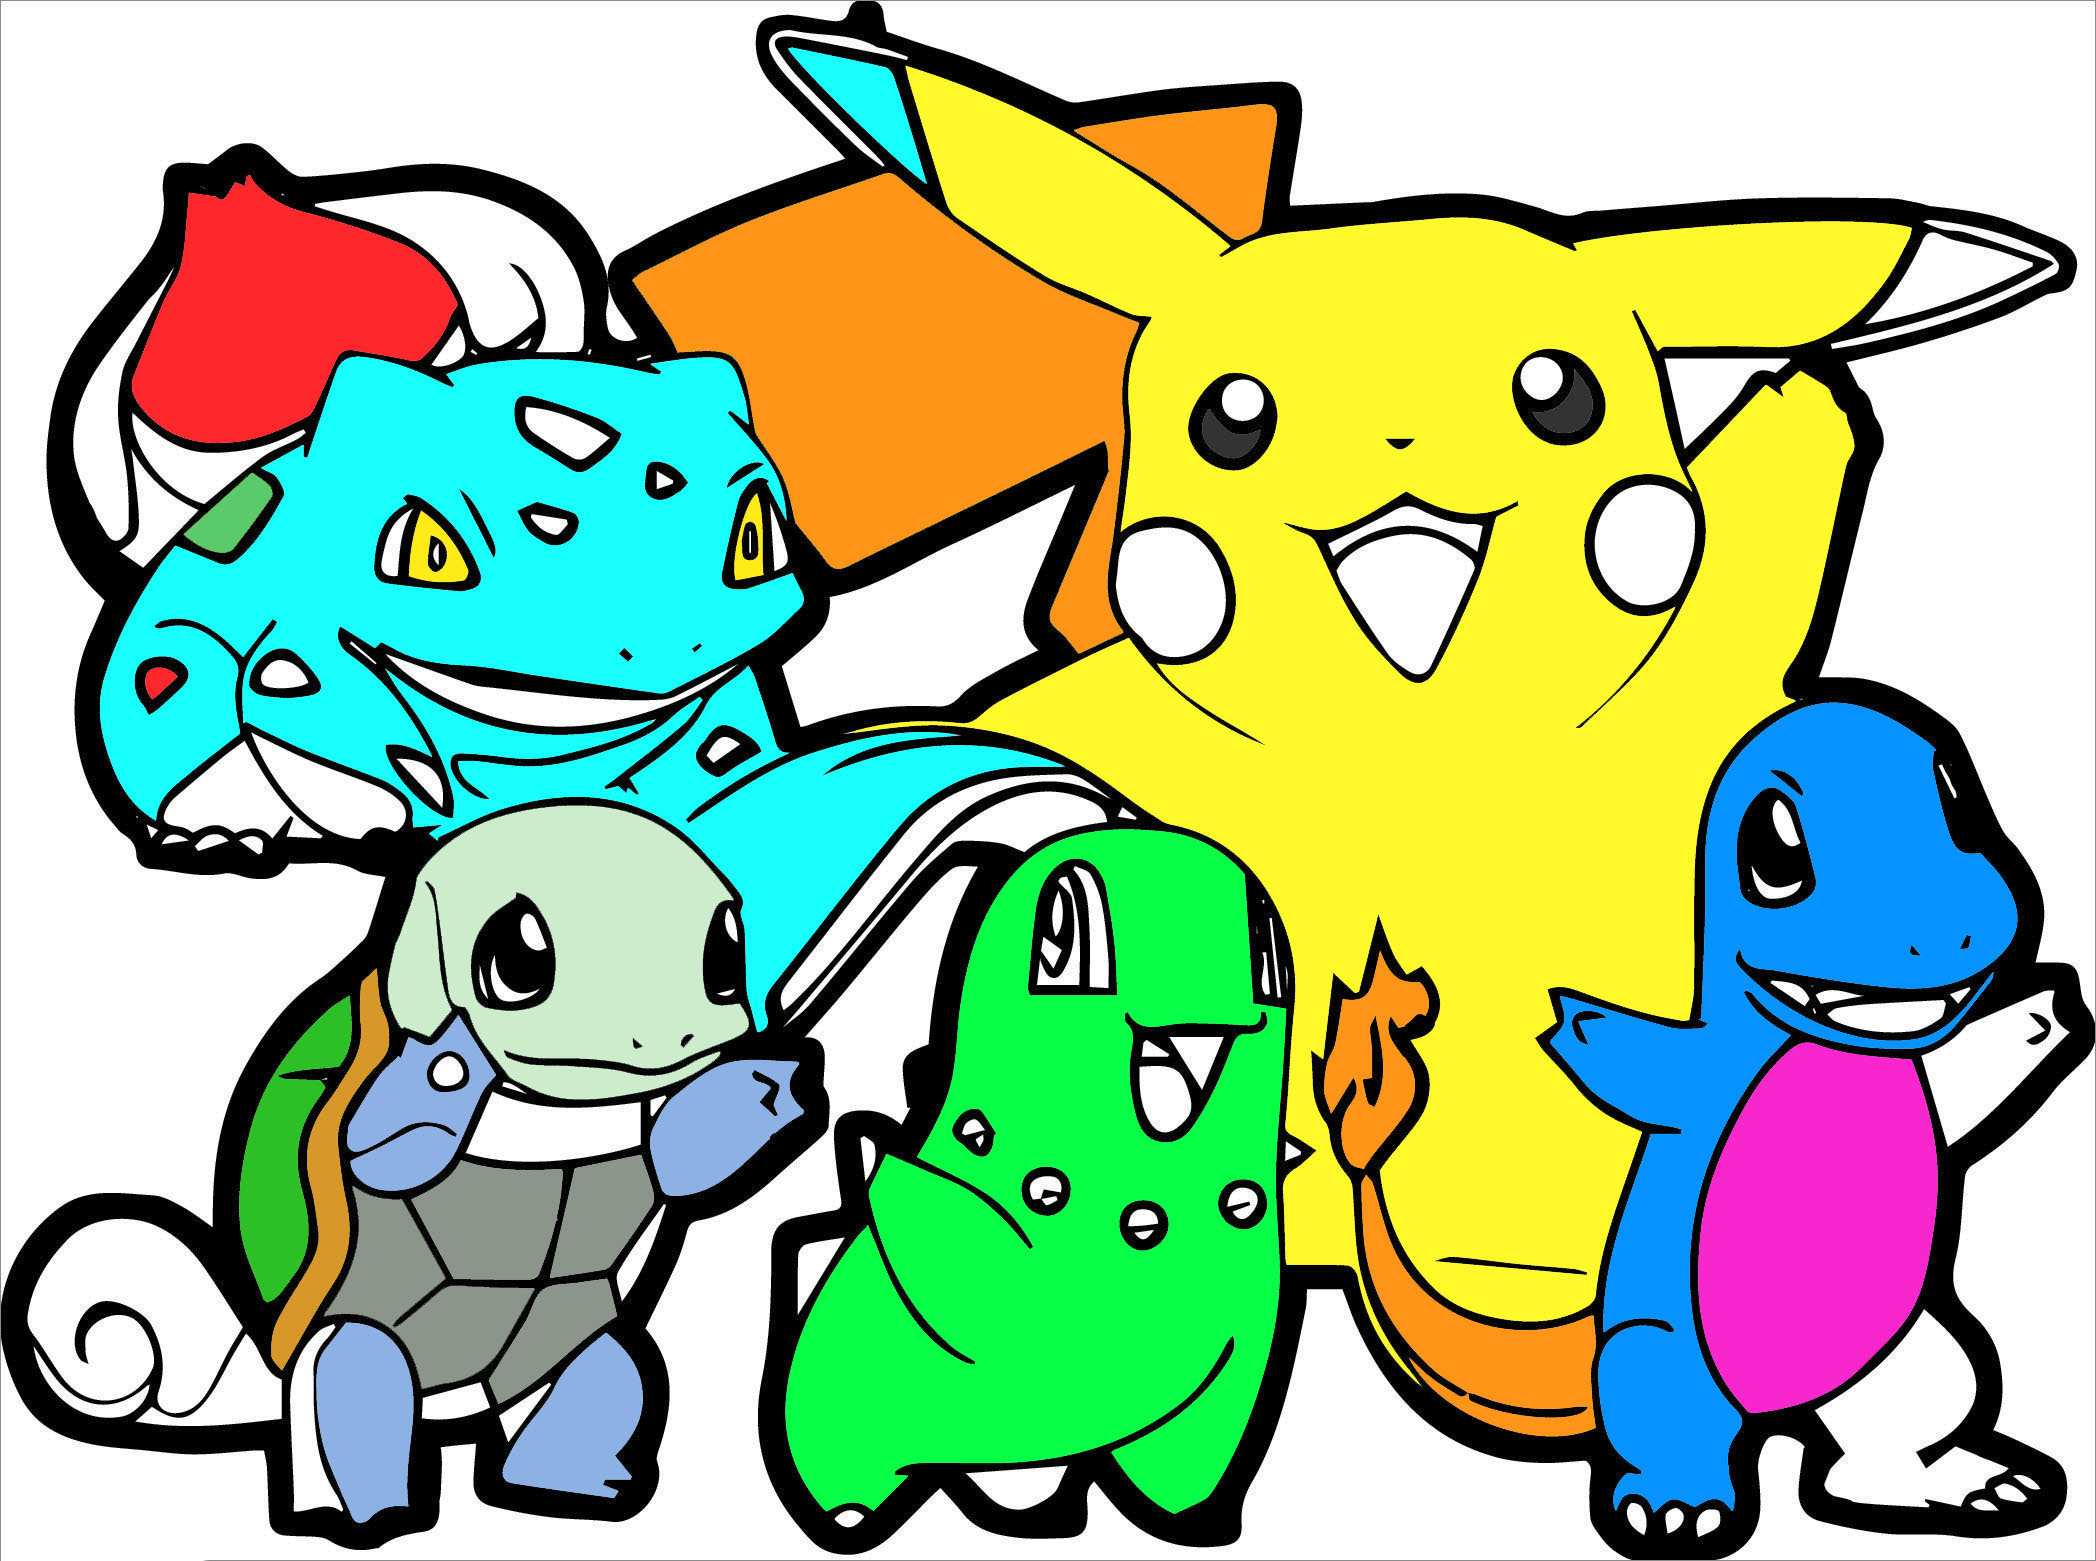 Viết lại được là Vẽ sáng tạo hình vẽ Pokemon với màu sắc tươi vui